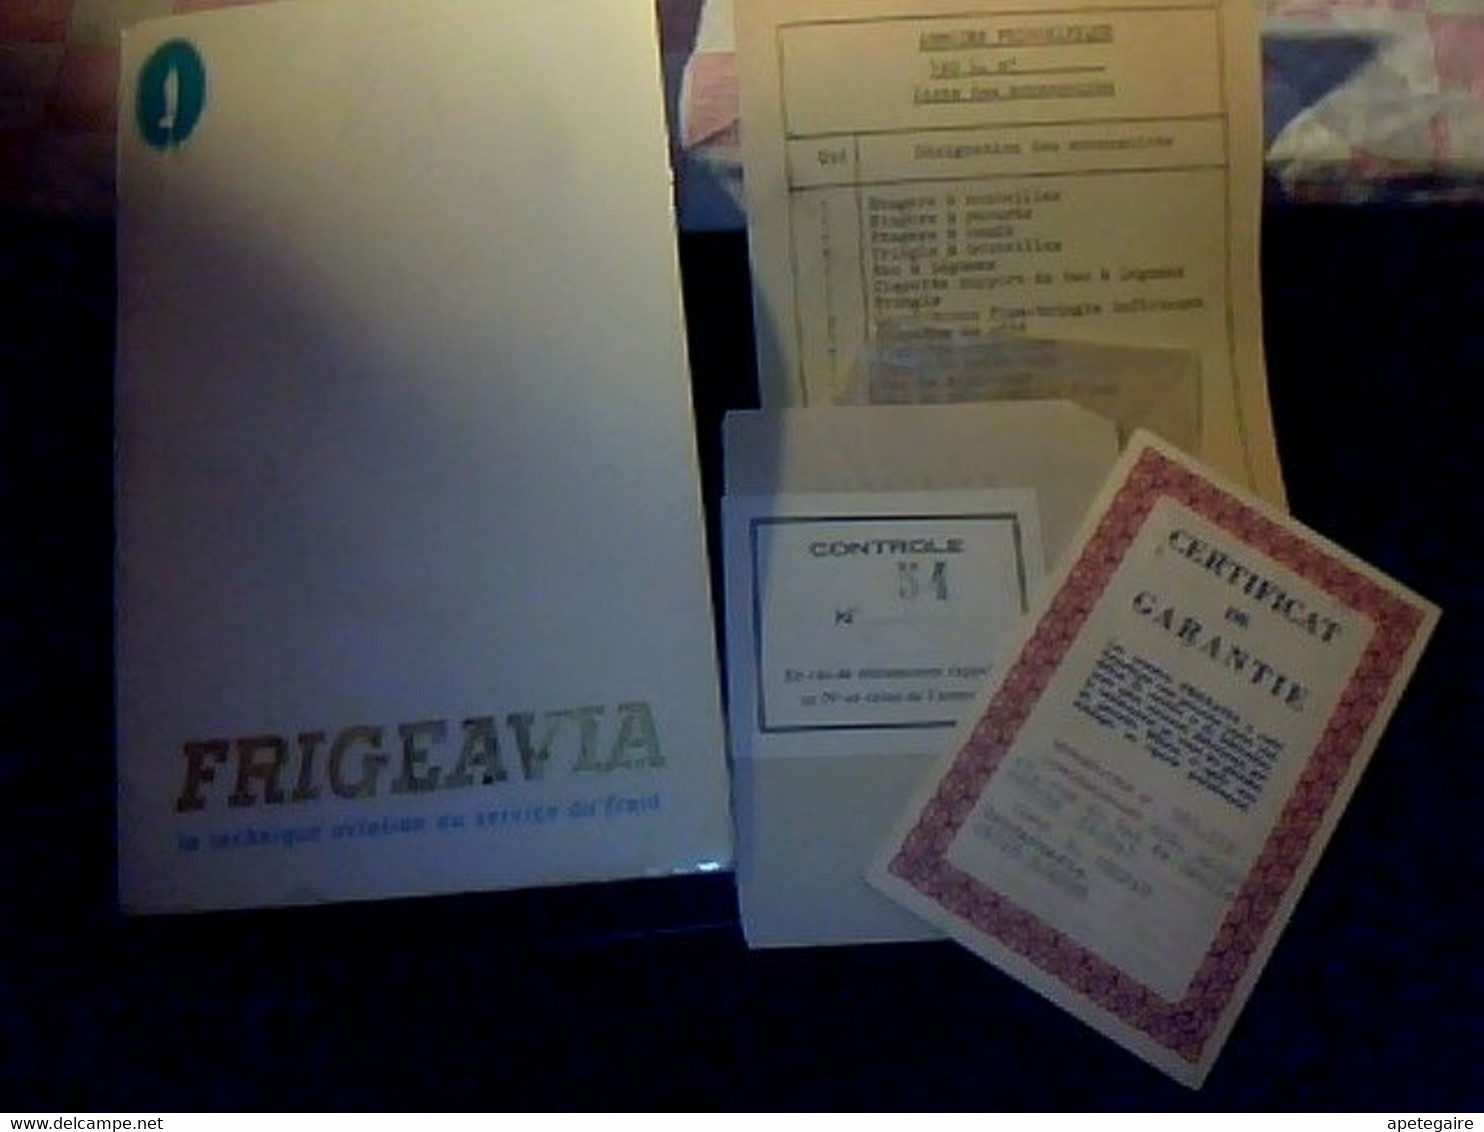 Réfrigérateurs Frigeavia Livret Technique Avec Recettes Plus Certifica De Garantie Année 1962 - Material Und Zubehör